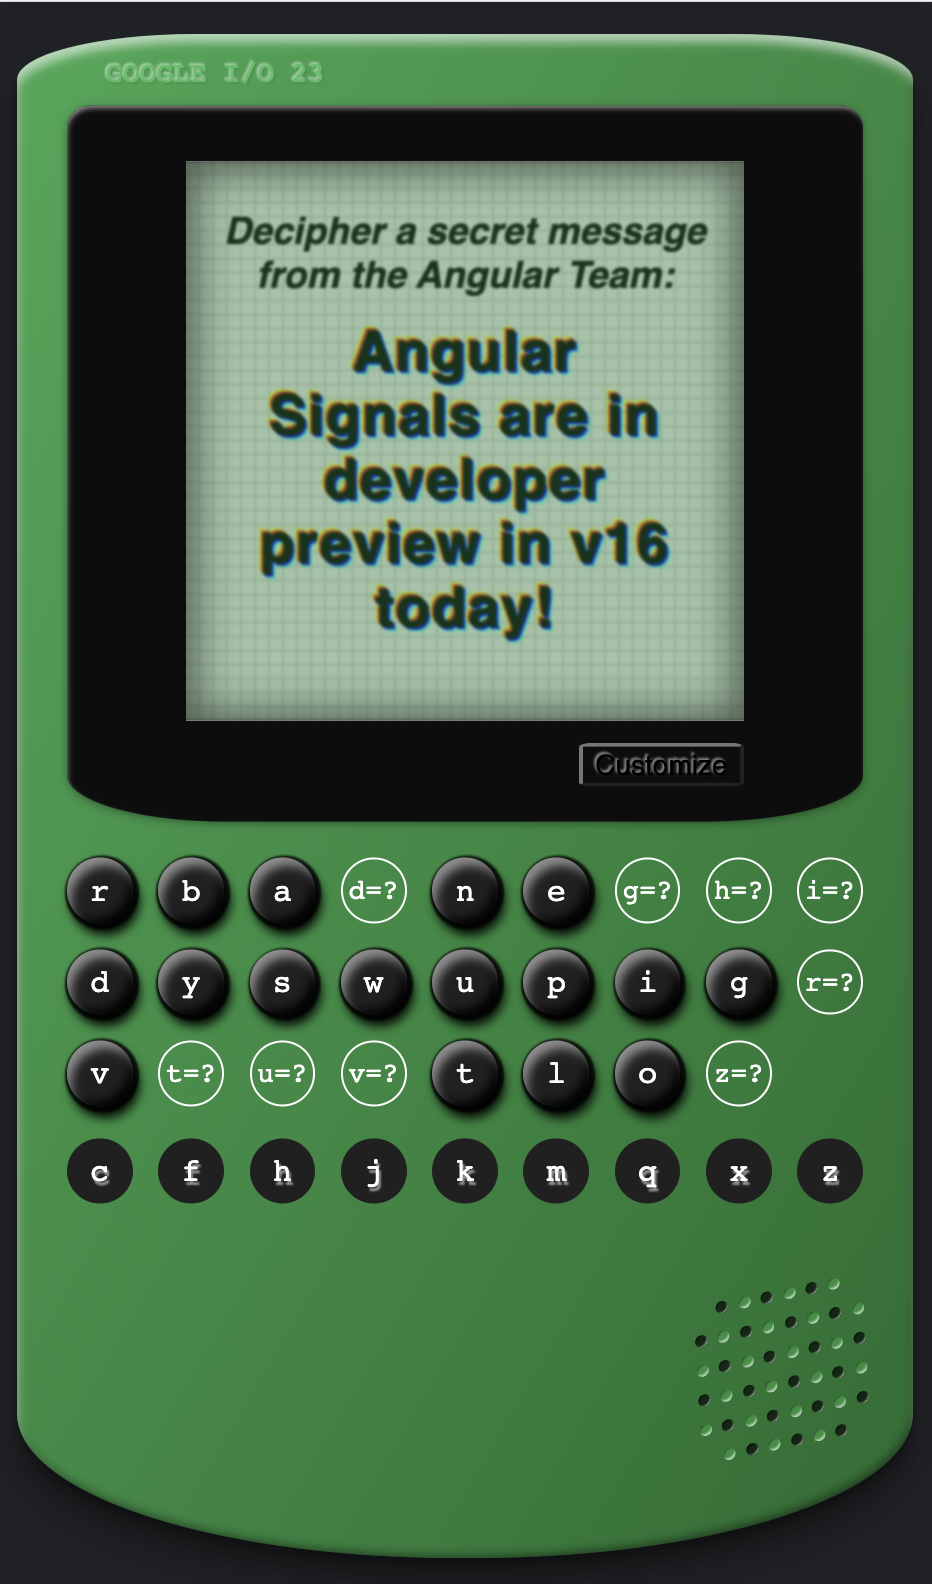 Angular Cypher oyunu, &quot;Angular Signals is the developer preview in v16 bugün!&quot; (Angular Sinyalleri bugün v16&#39;da geliştirici önizlemesinde!) ekranındaki gizli bir mesajla çözüldü.